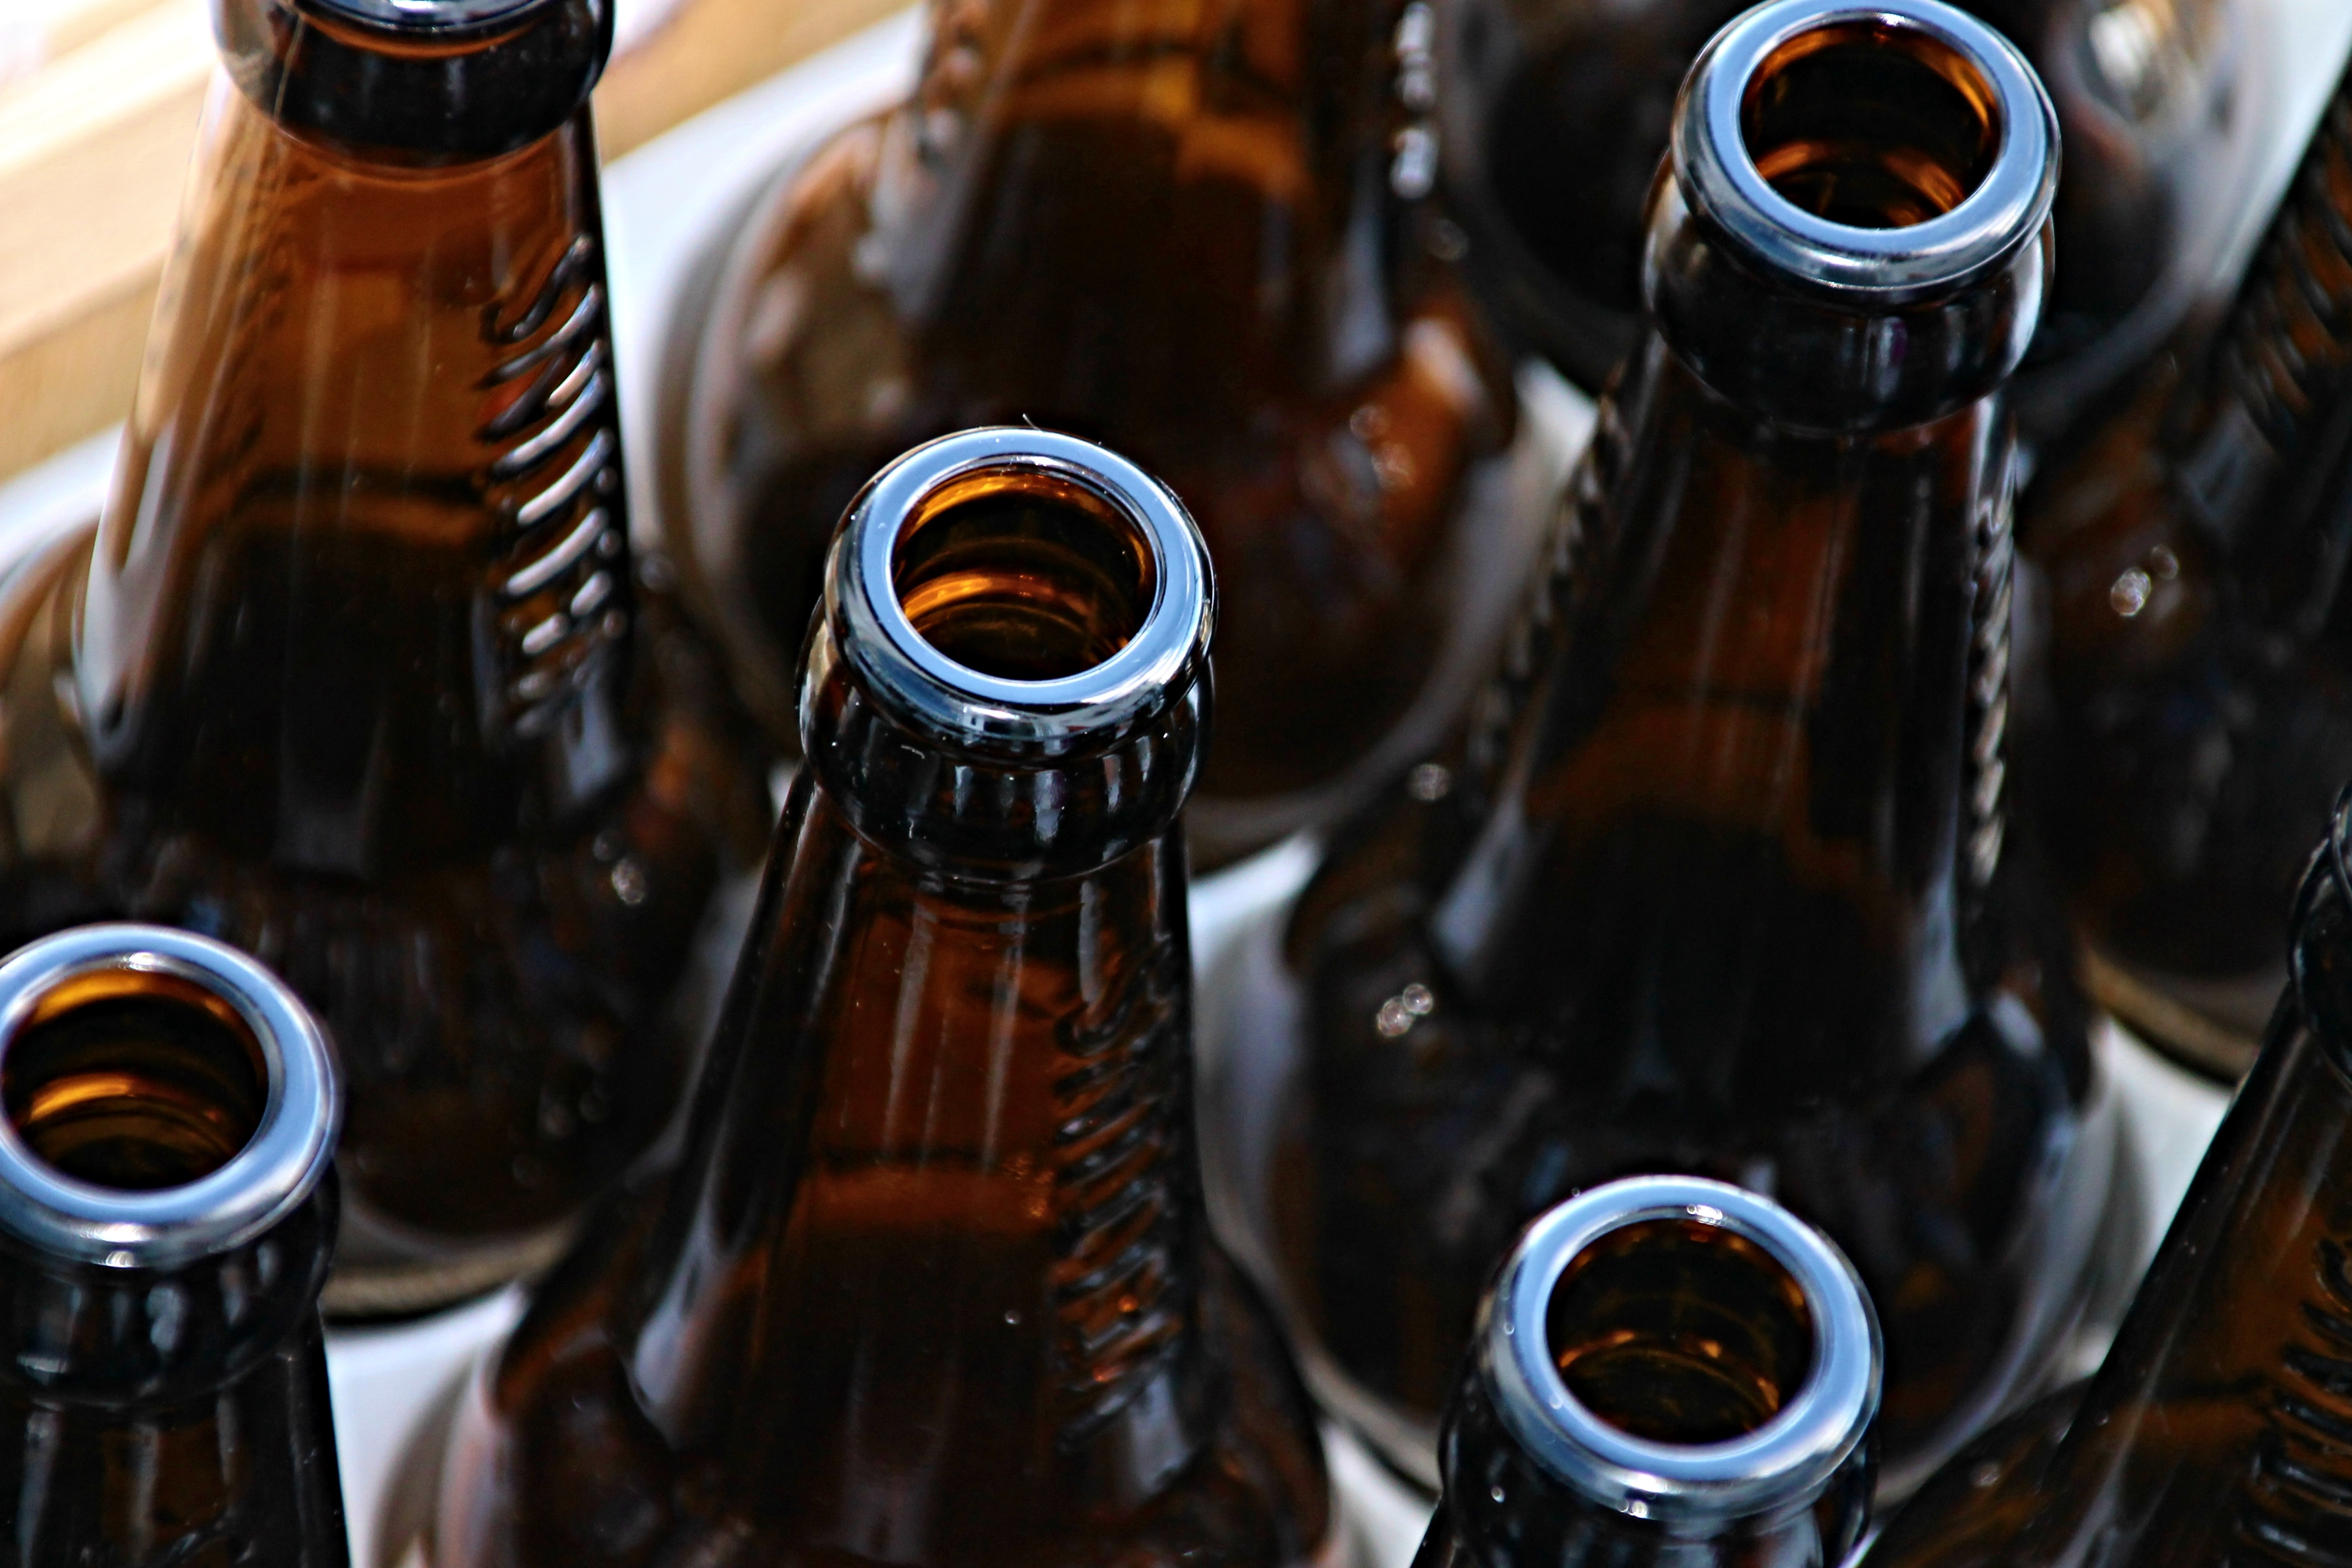 Clubes de cerveja oferecem comodidade e experiências em casa - Foto: manfredrichter/Pixabay